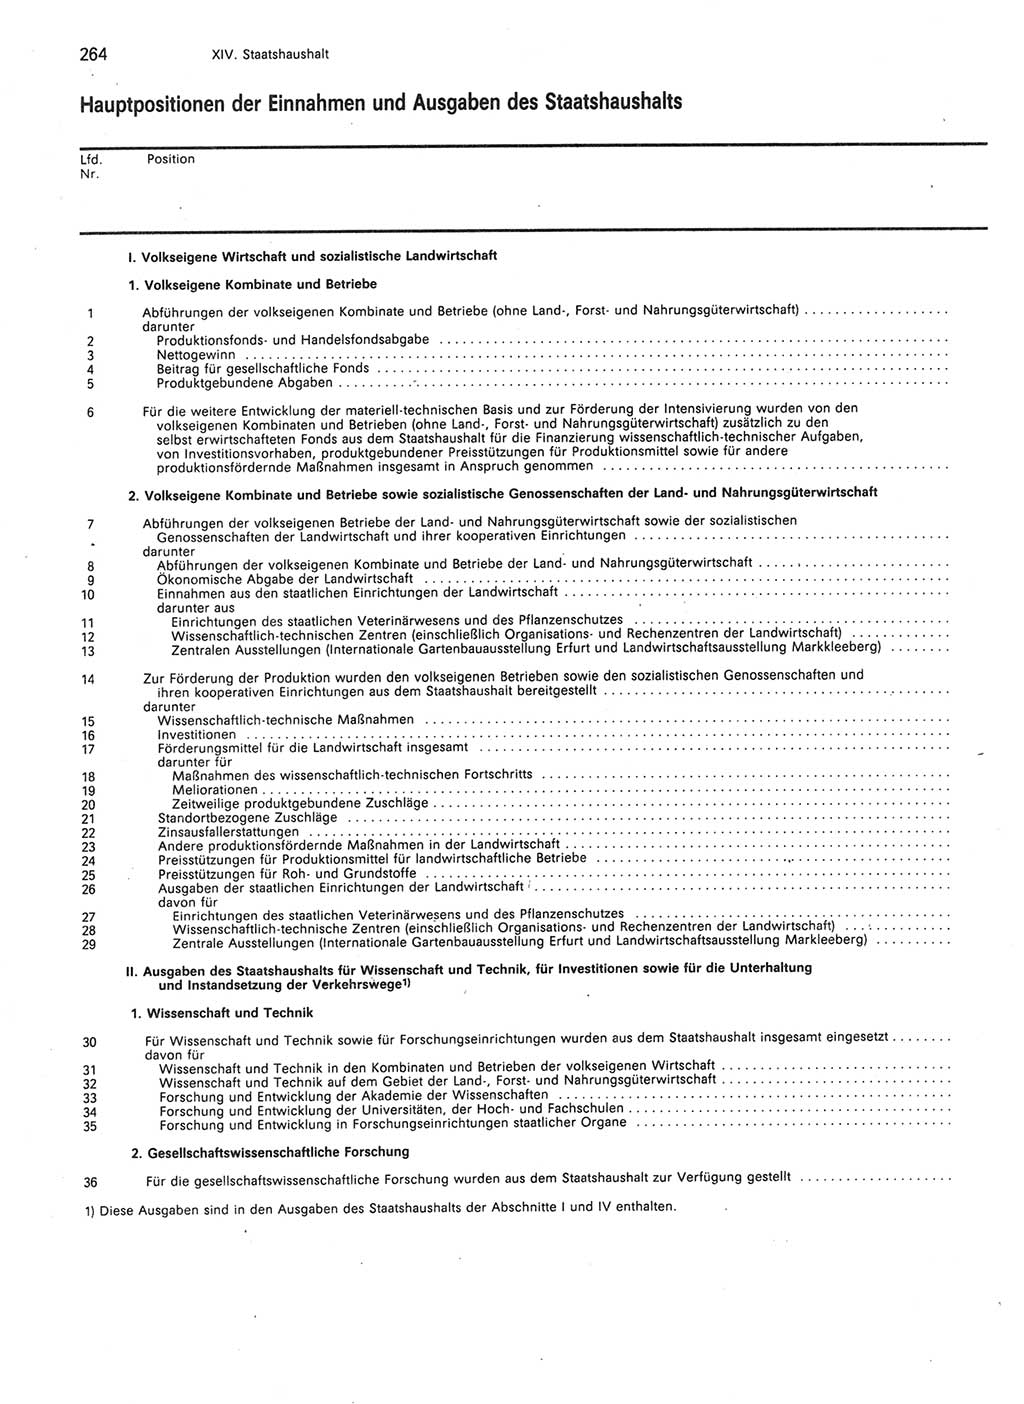 Statistisches Jahrbuch der Deutschen Demokratischen Republik (DDR) 1989, Seite 264 (Stat. Jb. DDR 1989, S. 264)